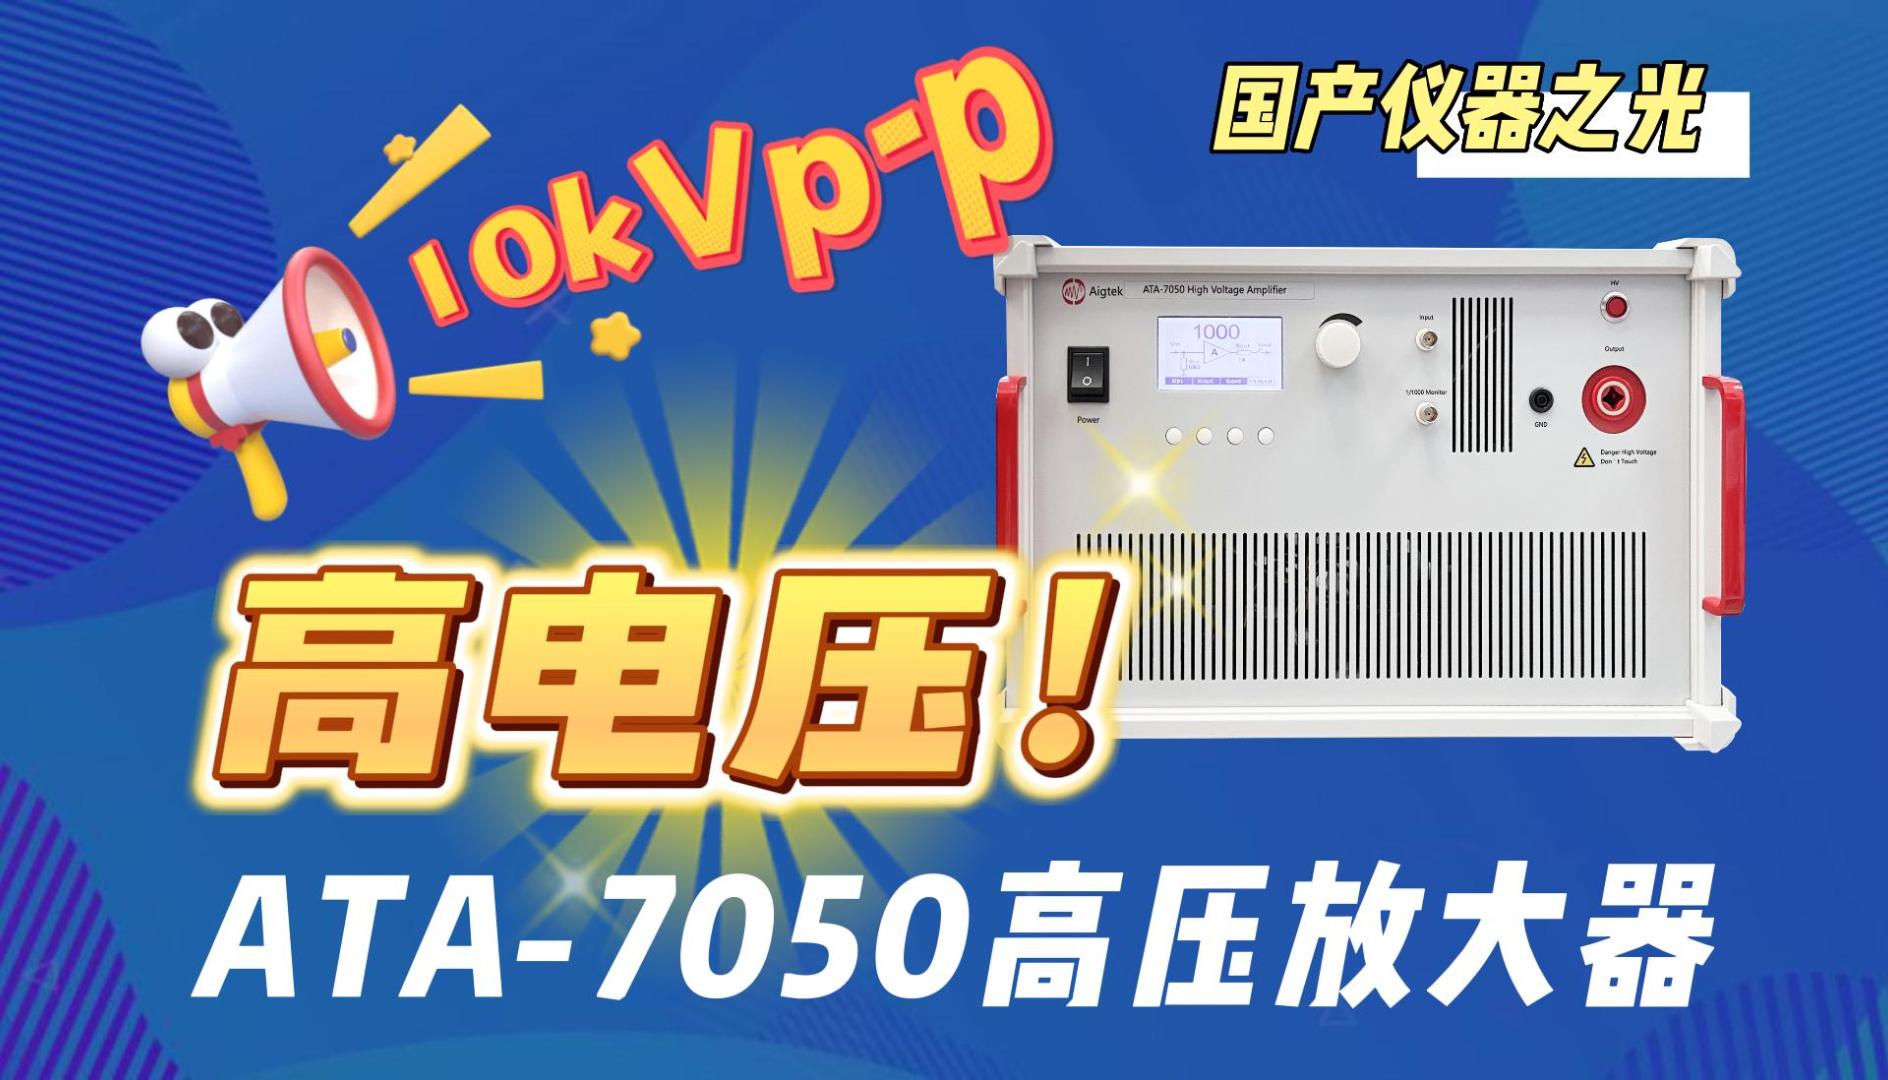 多大电压才能满足你电压测试需求？ATA-7050高压放大器10kVp-p#功率放大器 #电子制作 #电子 